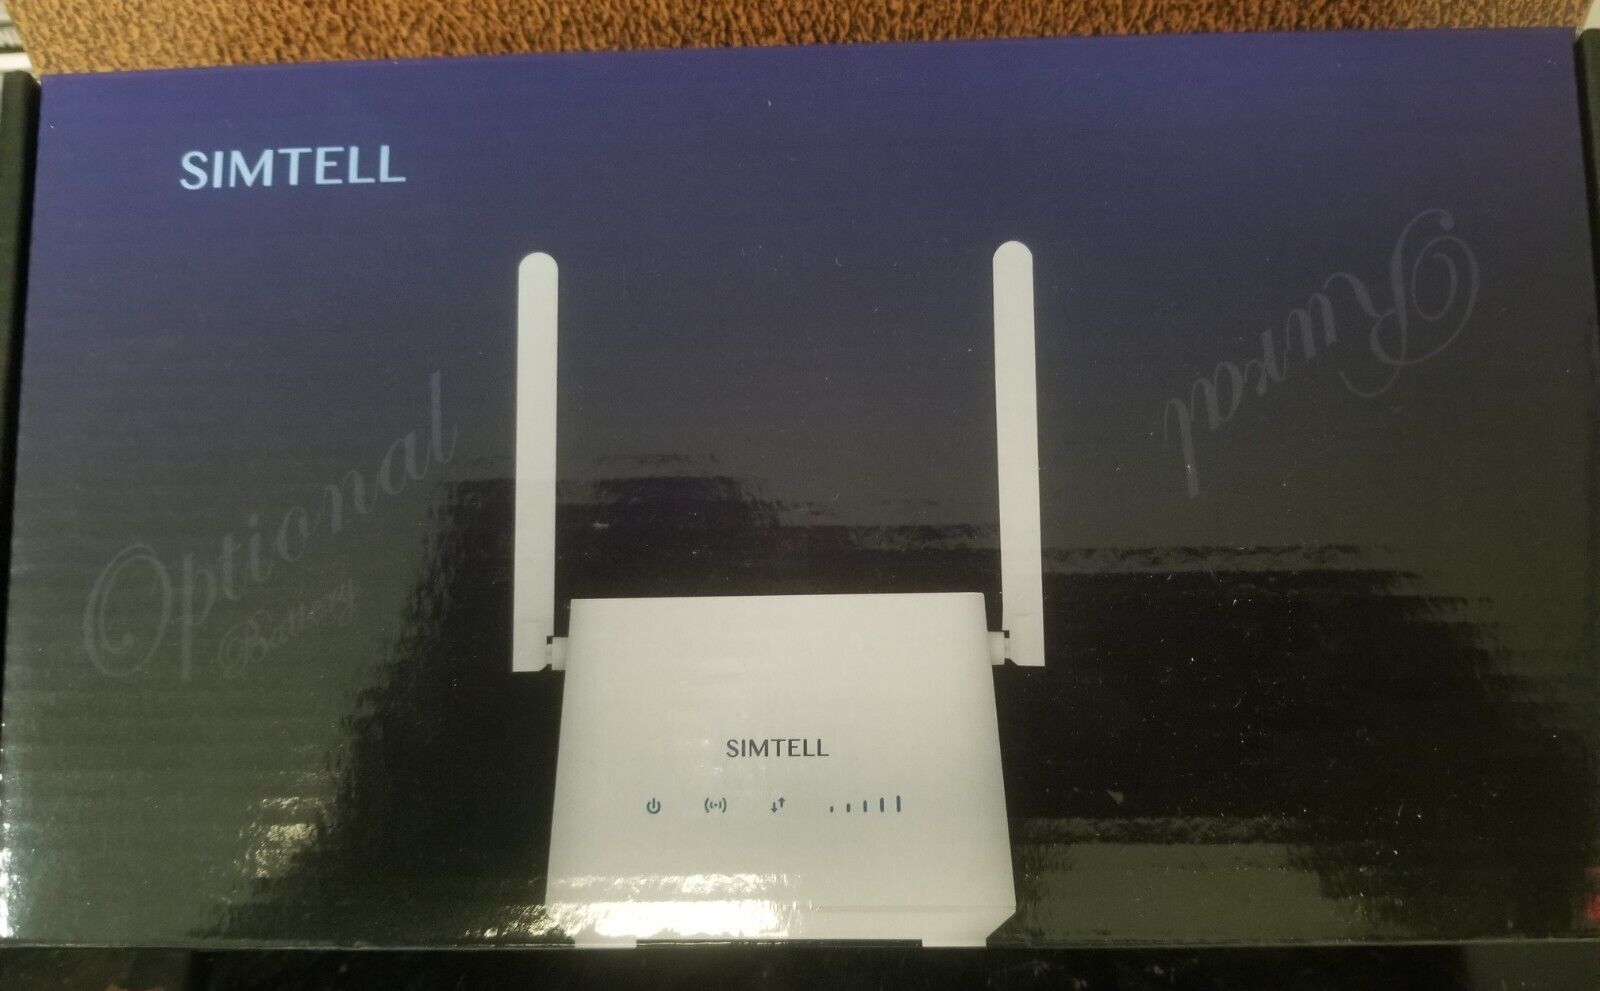 Simtell 4G Long-Range Wireless Router - White 